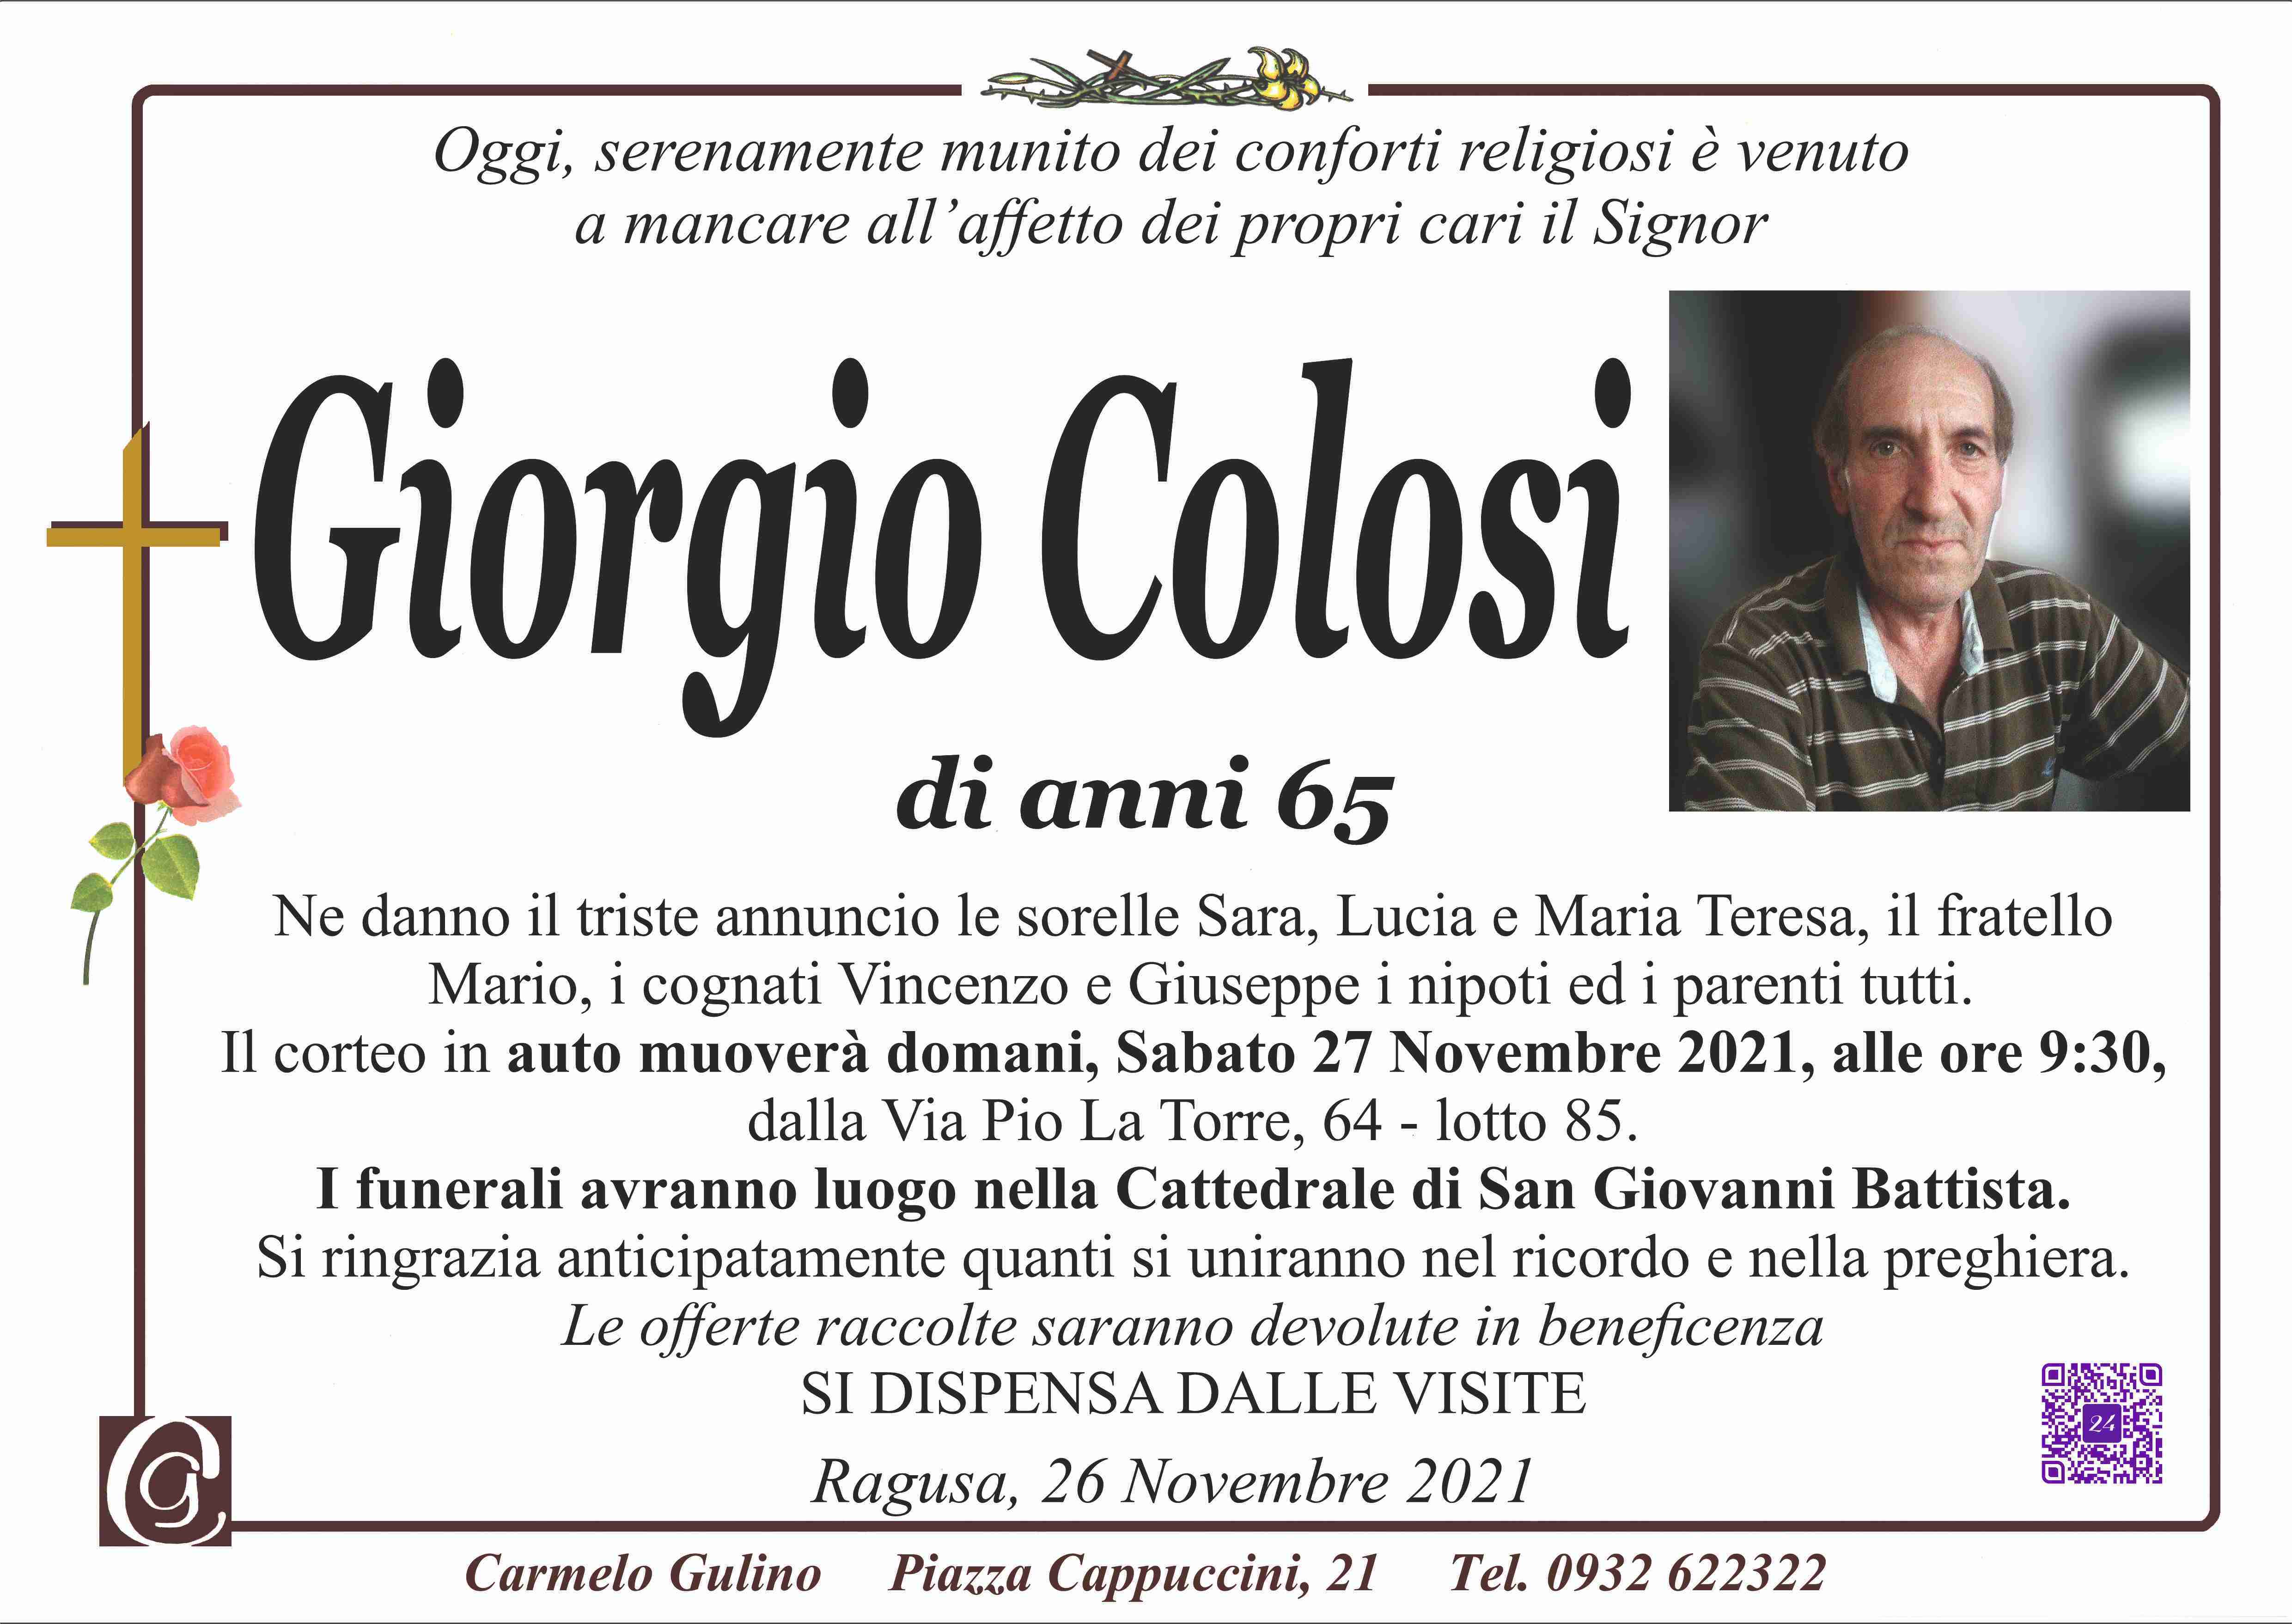 Giorgio Colosi